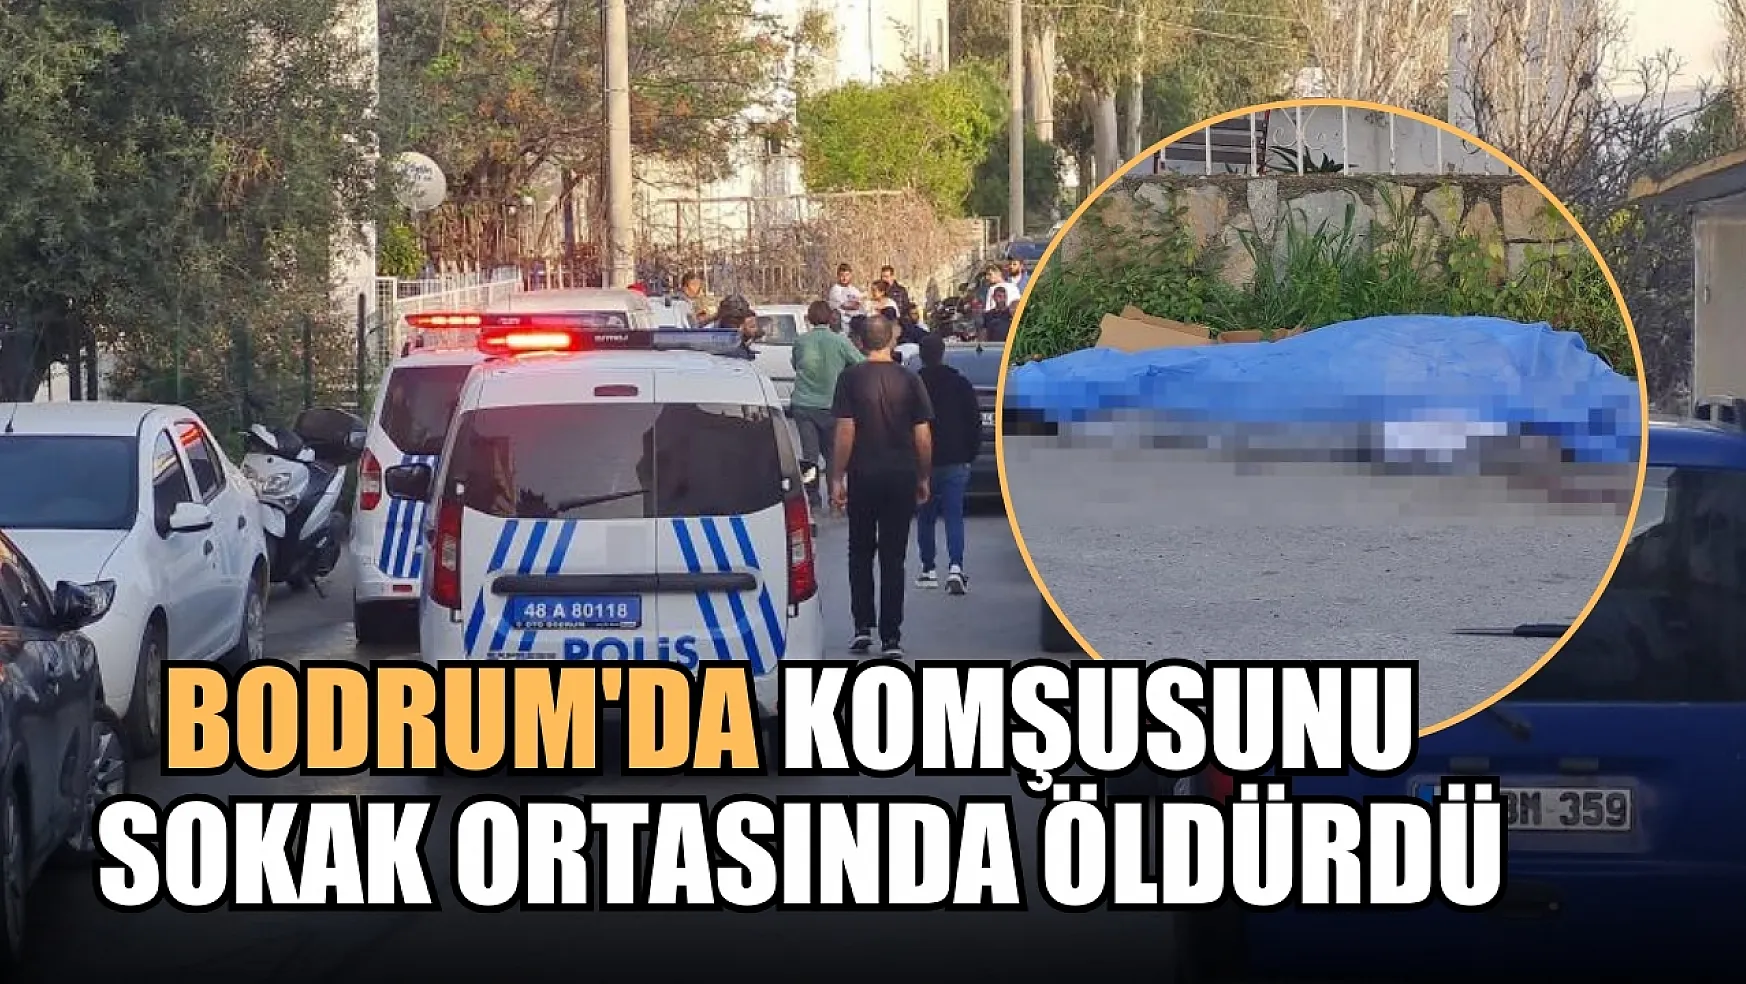 Bodrum'da Komşusunu sokak ortasında öldürdü